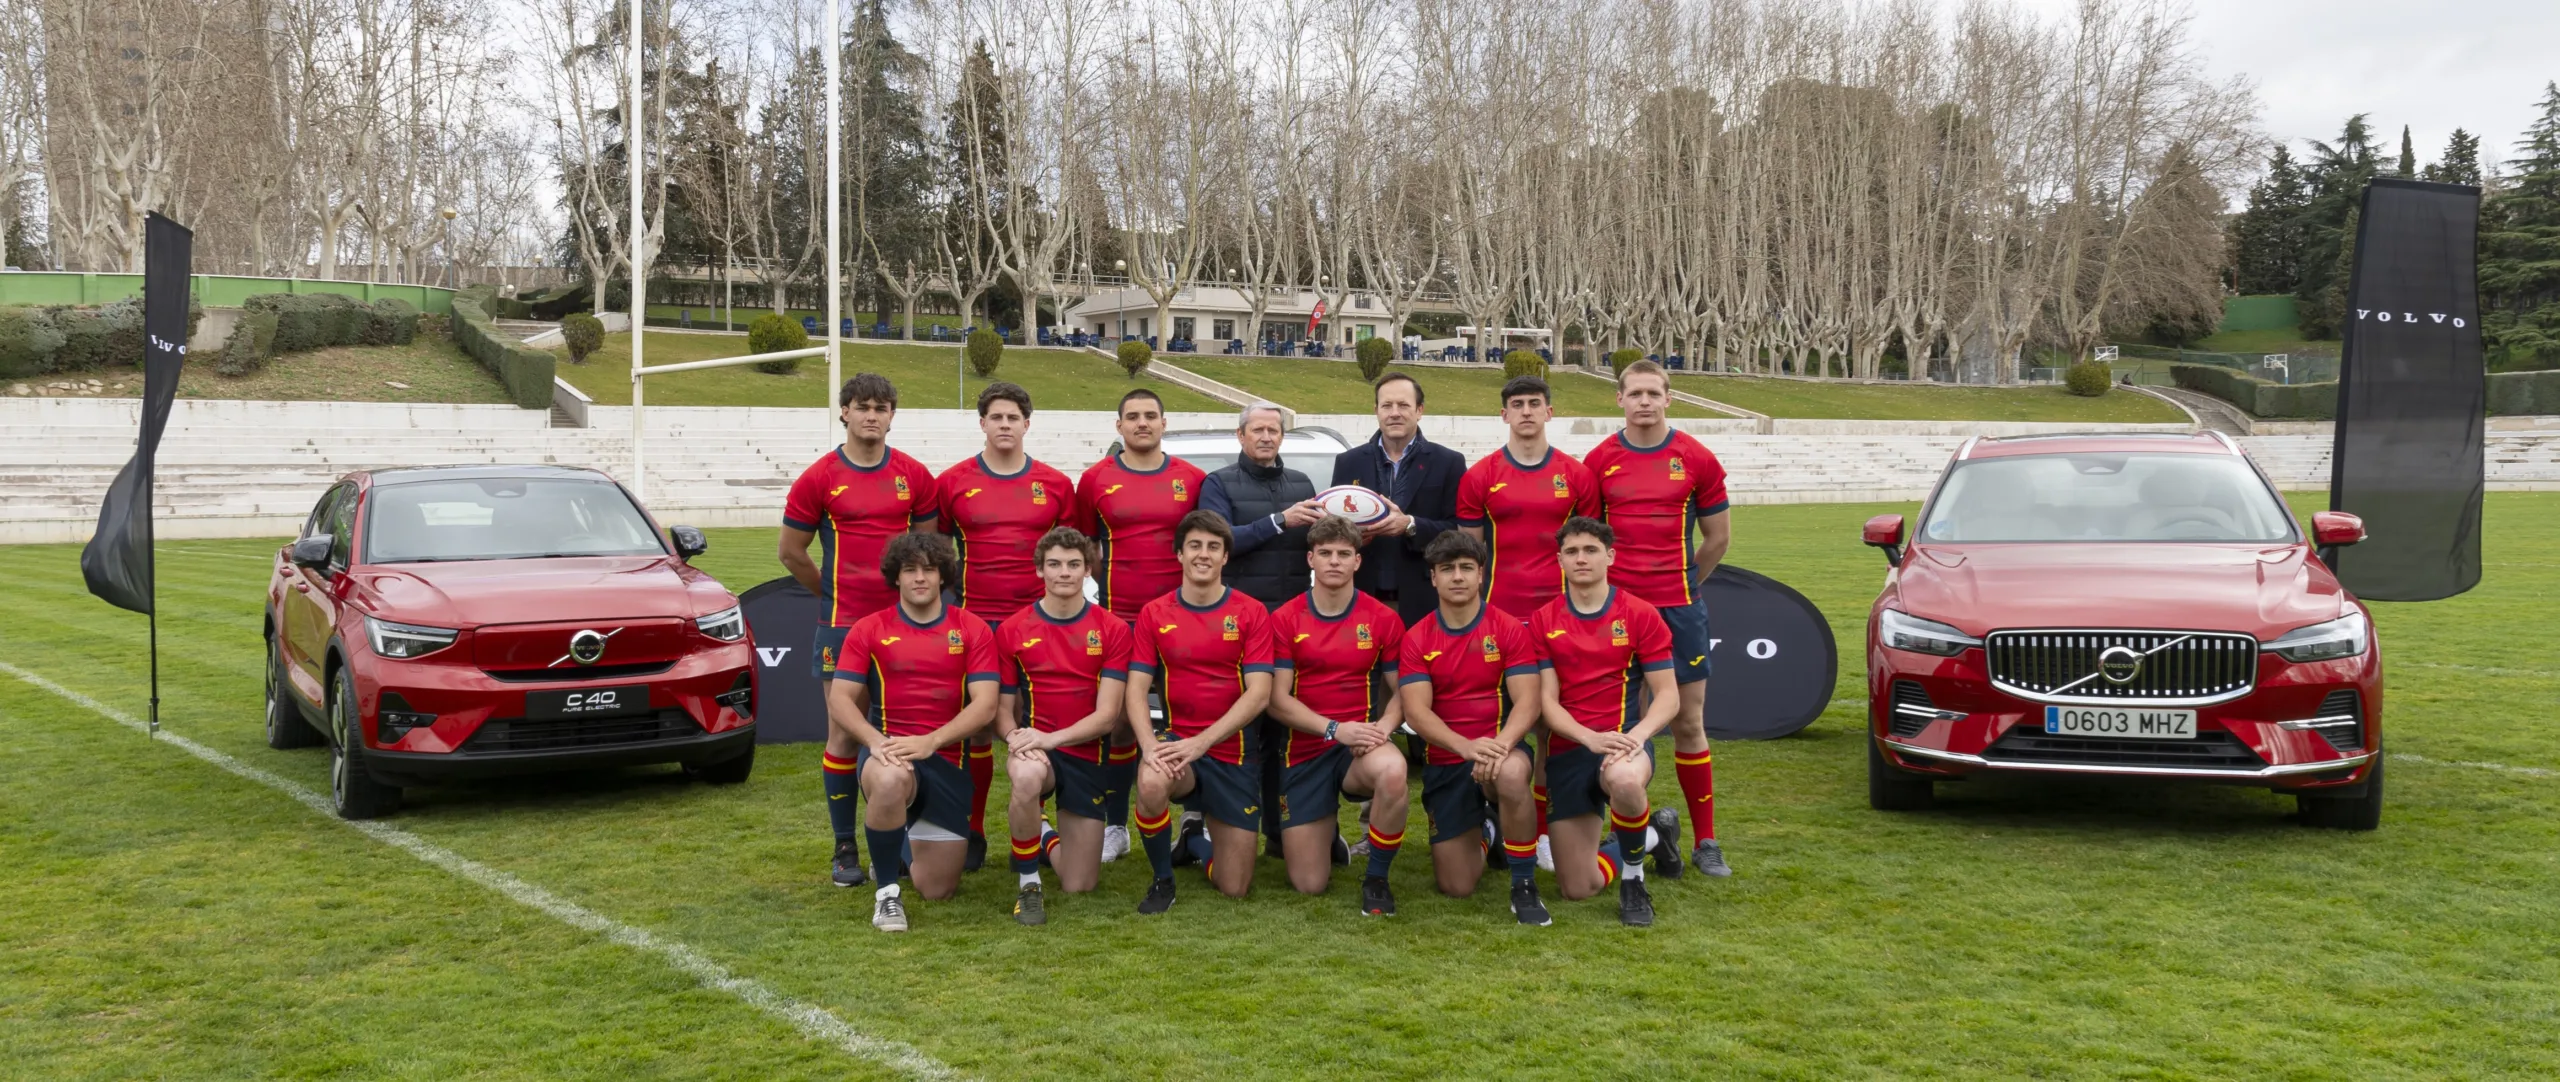 Volvo car España, nuevo patrocinador oficial de la Real Federación Española de Rugby